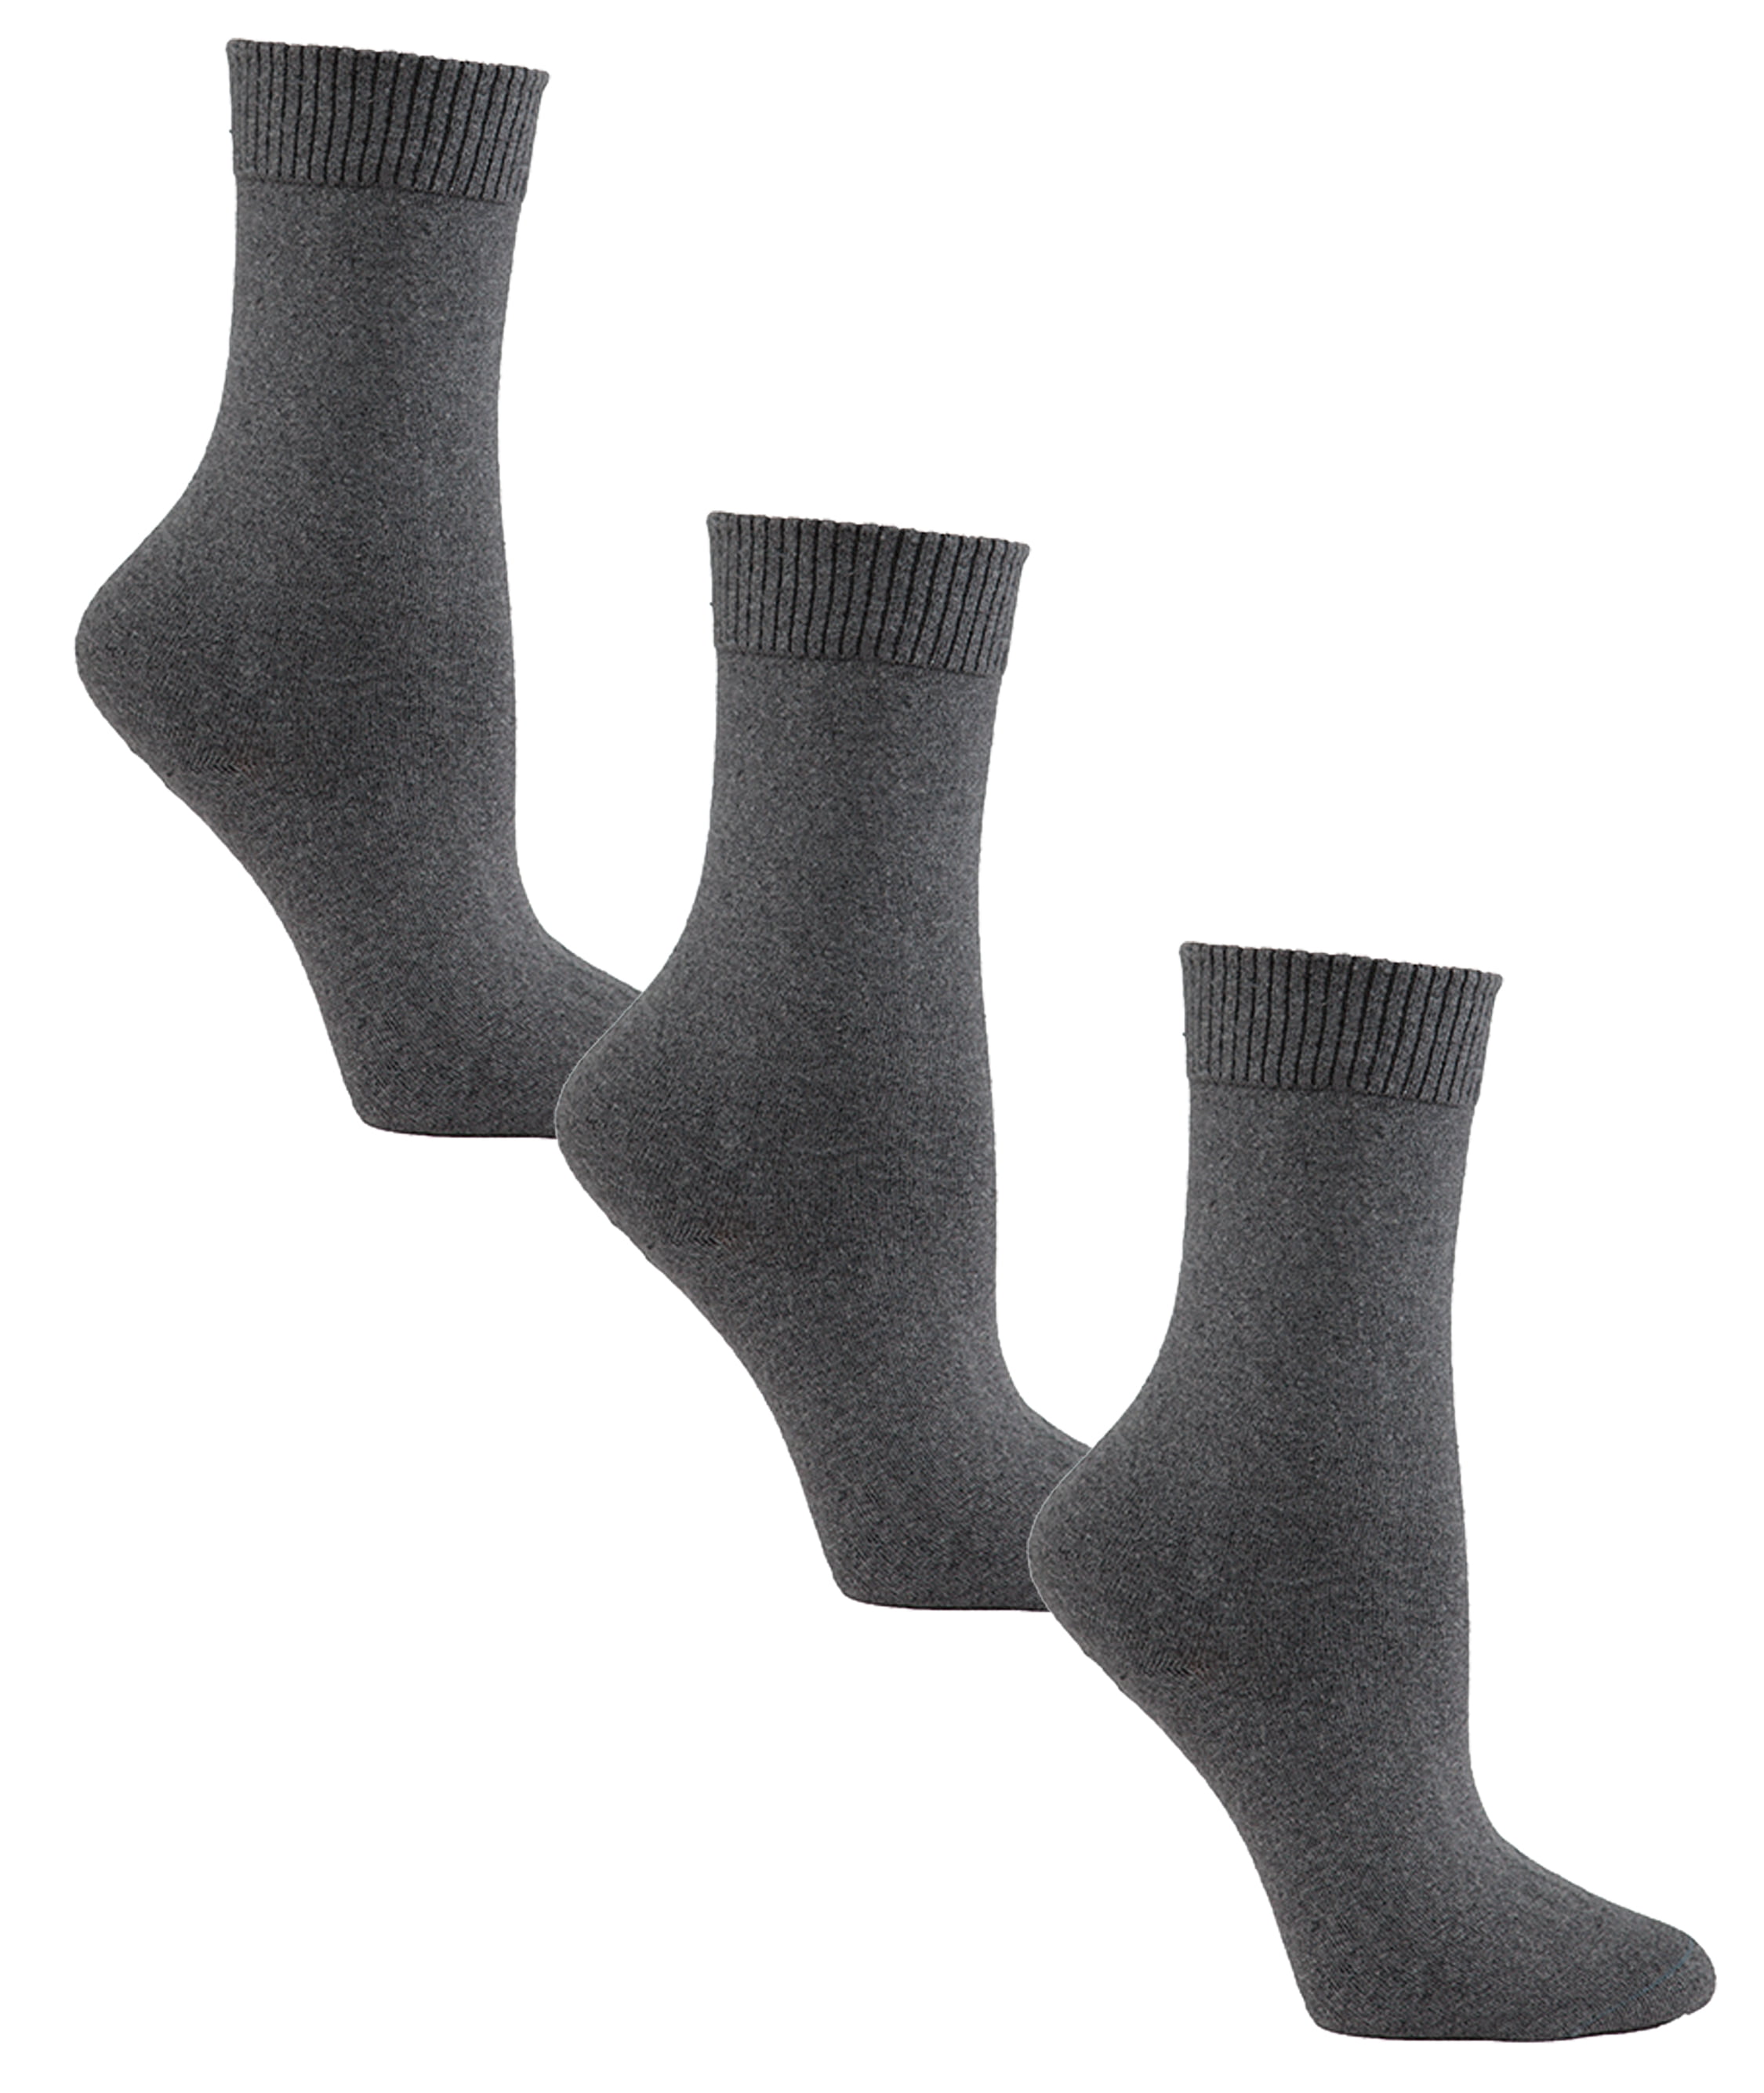 Womens Flat Knit Crew Diabetic Socks 3 Pack | Sock Size 9-11 - Walmart ...